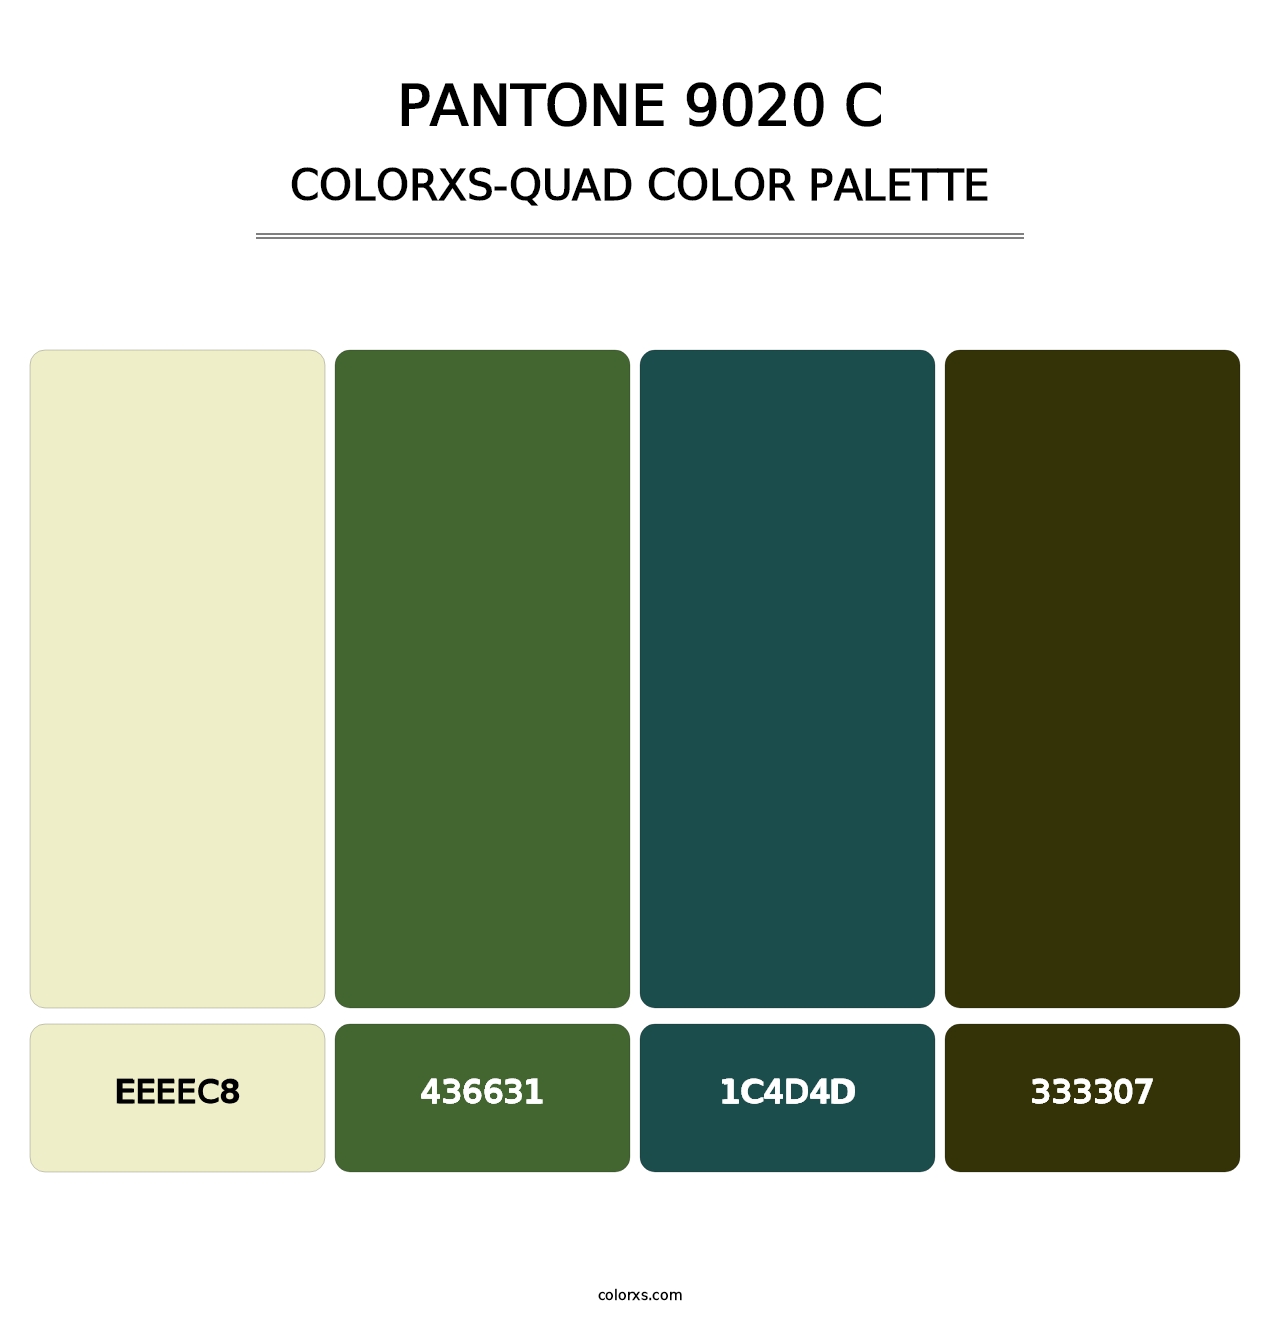 PANTONE 9020 C - Colorxs Quad Palette